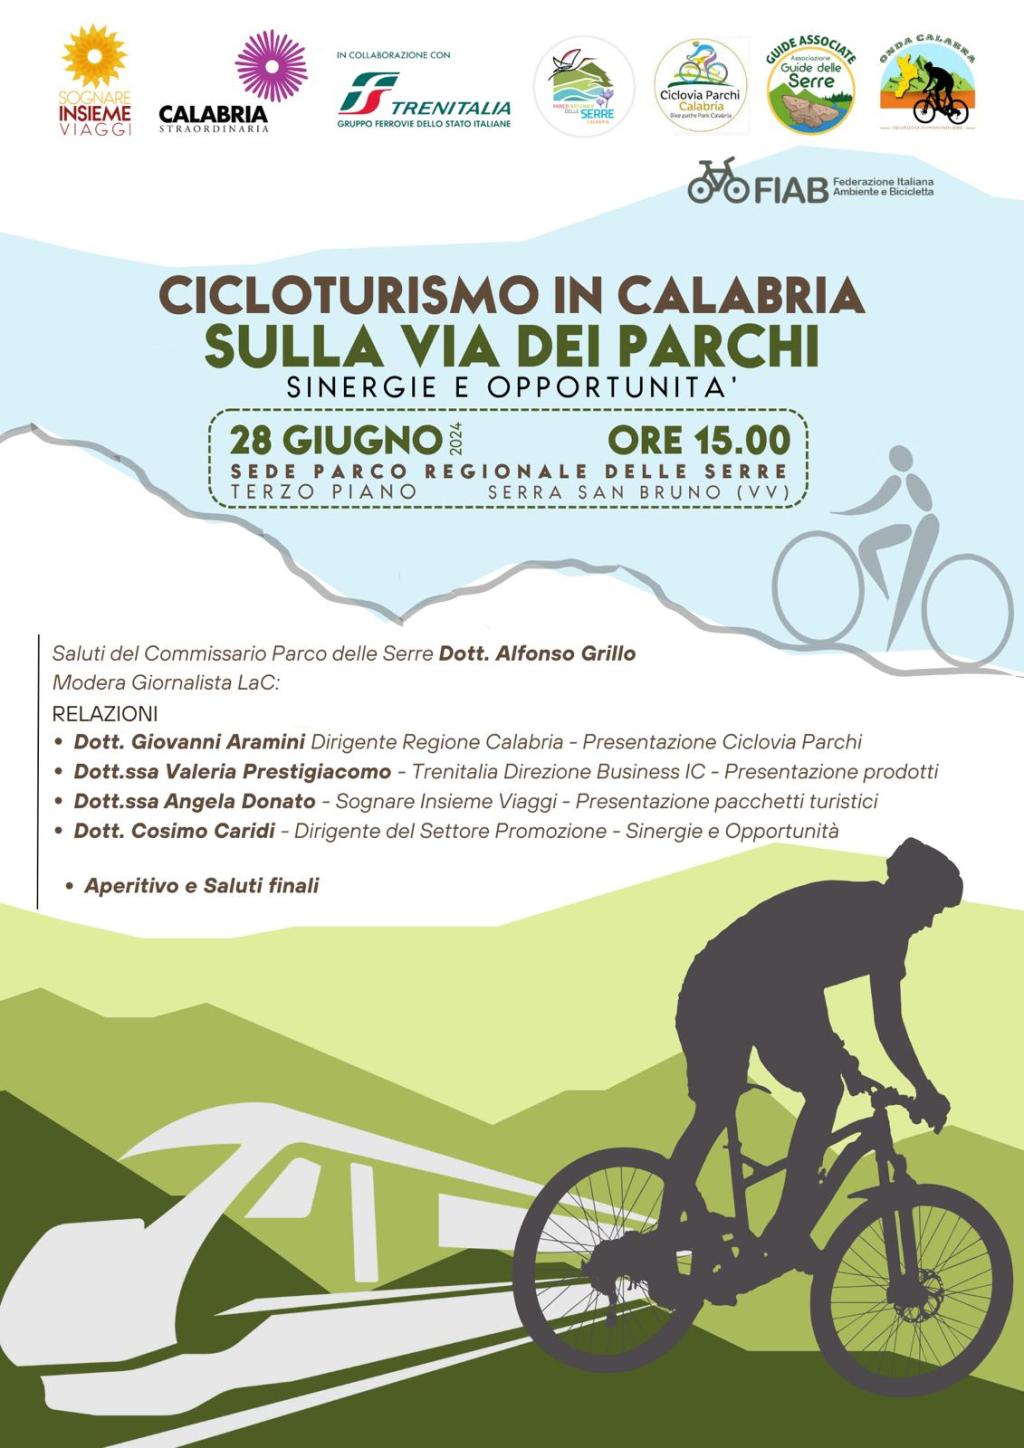 “Sulla via dei Parchi”, esperti a confronto su sinergie e opportunità con il Cicloturismo in Calabria